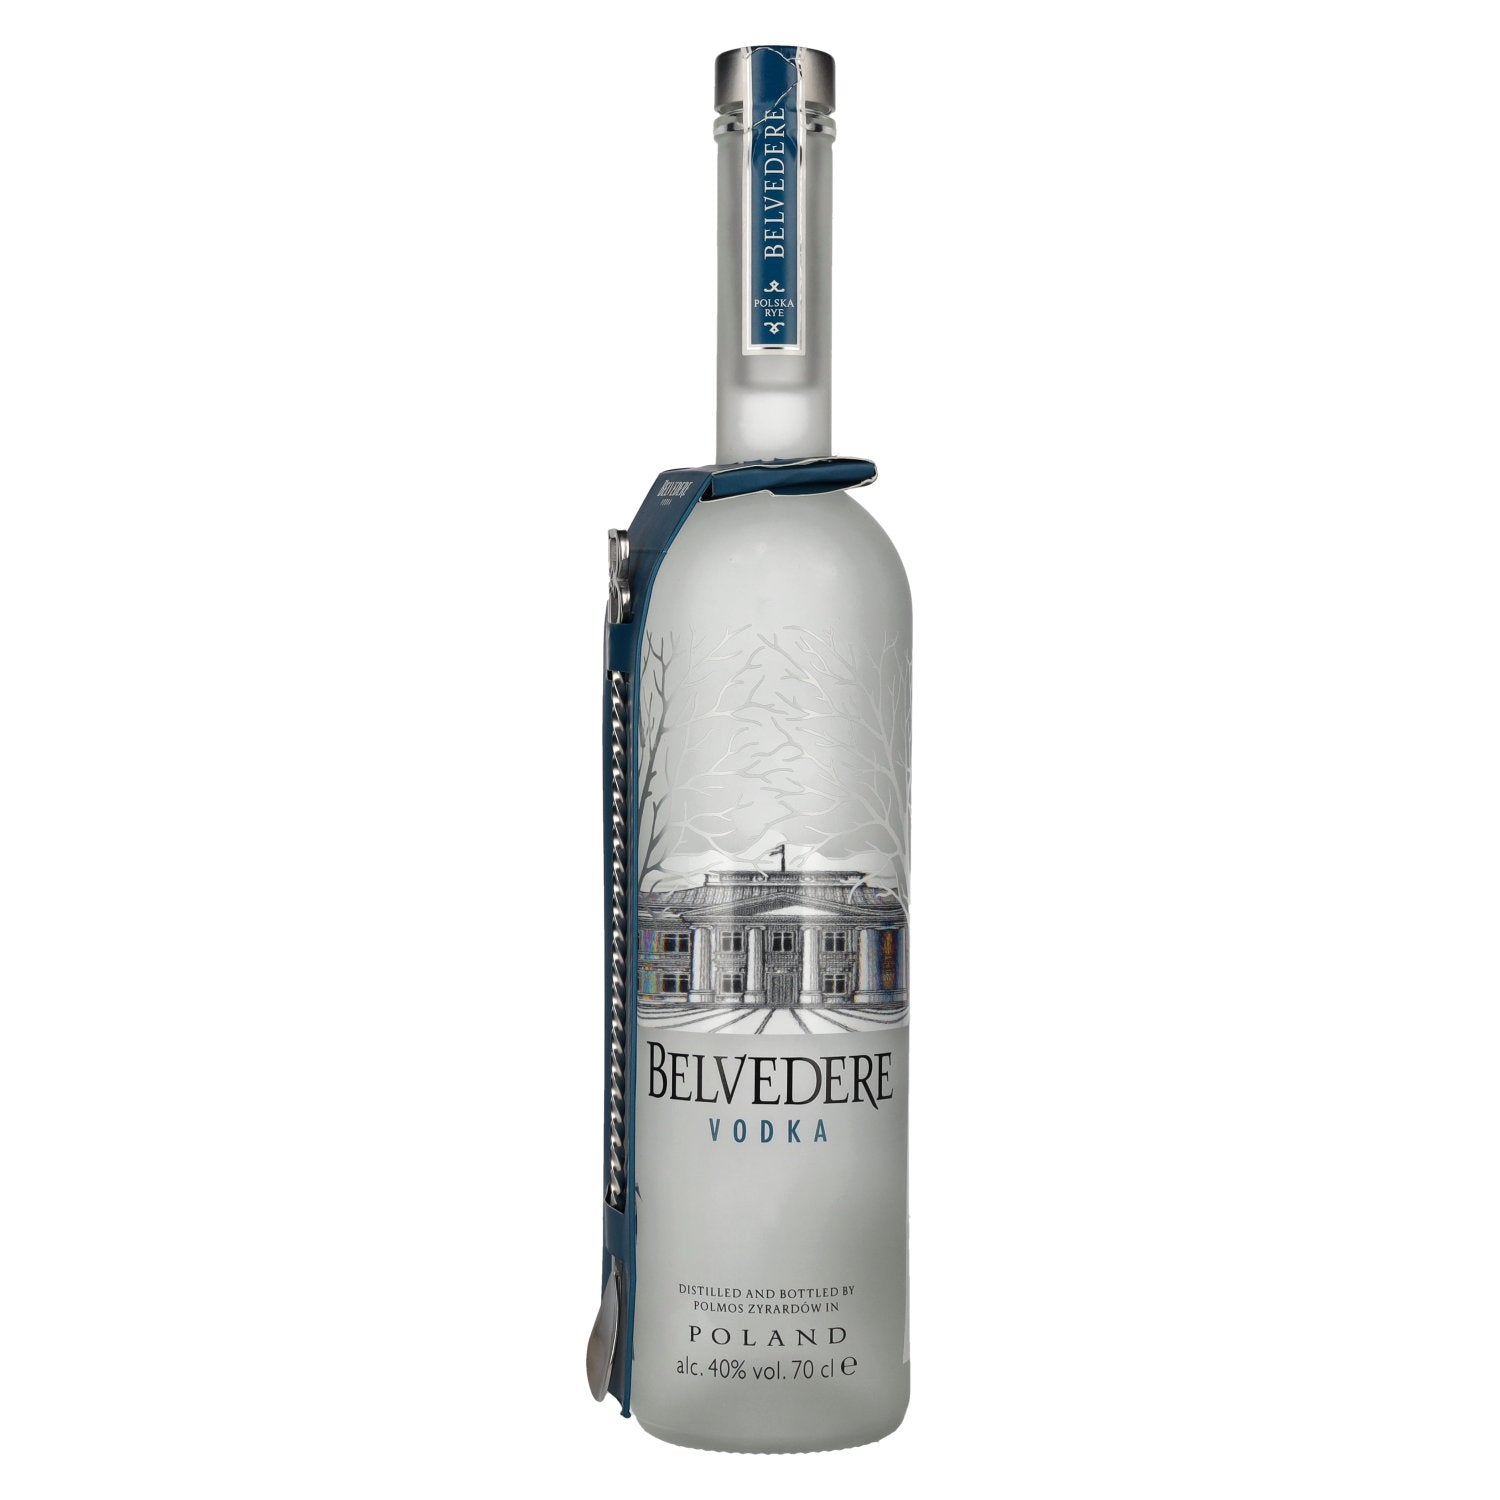 Barlöffel Belvedere Vol. 40% with 0,7l Vodka